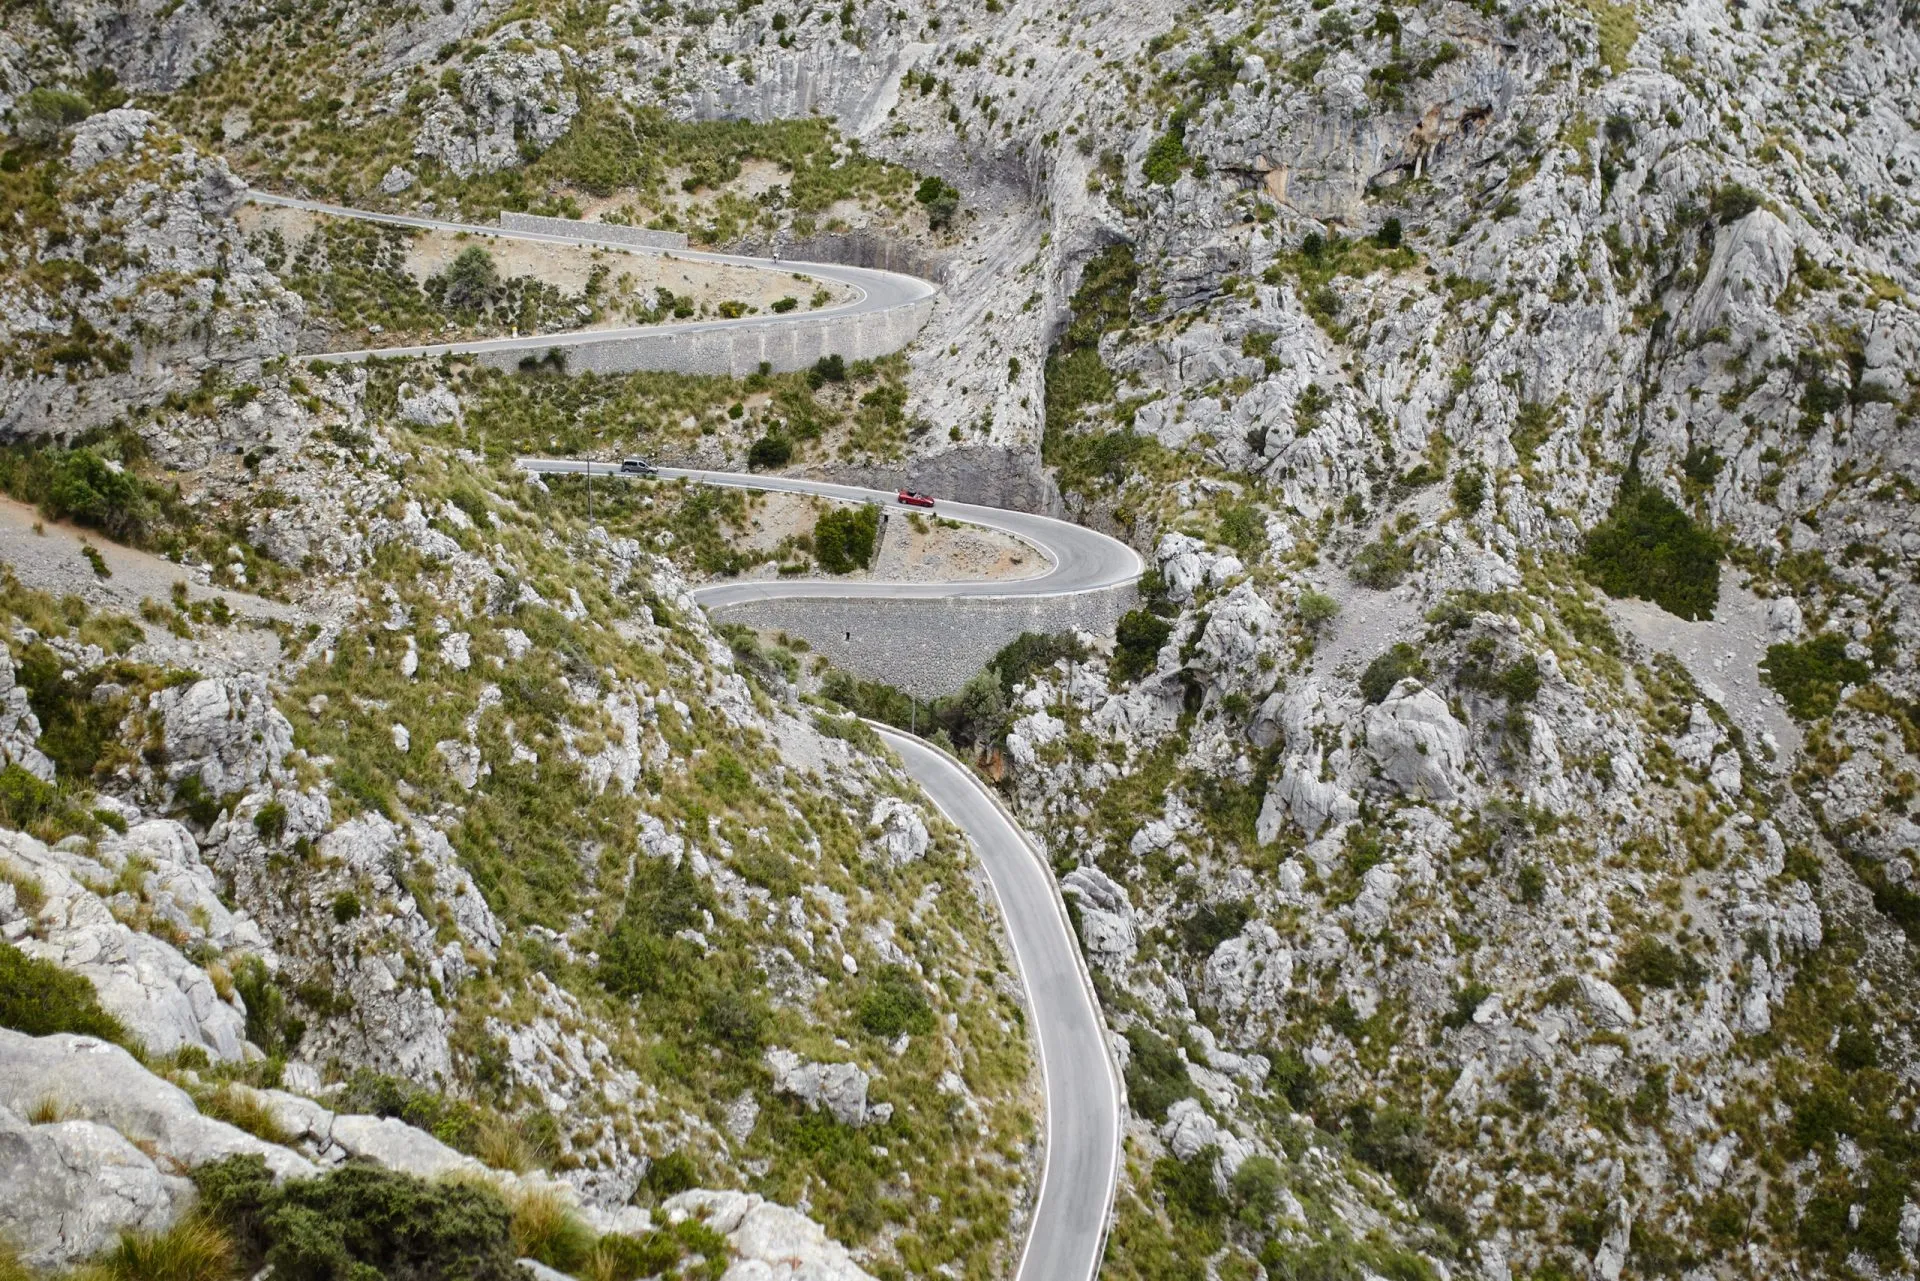 Strada ciclabile Sa Colobra serpentina a Maiorca, Spagna.